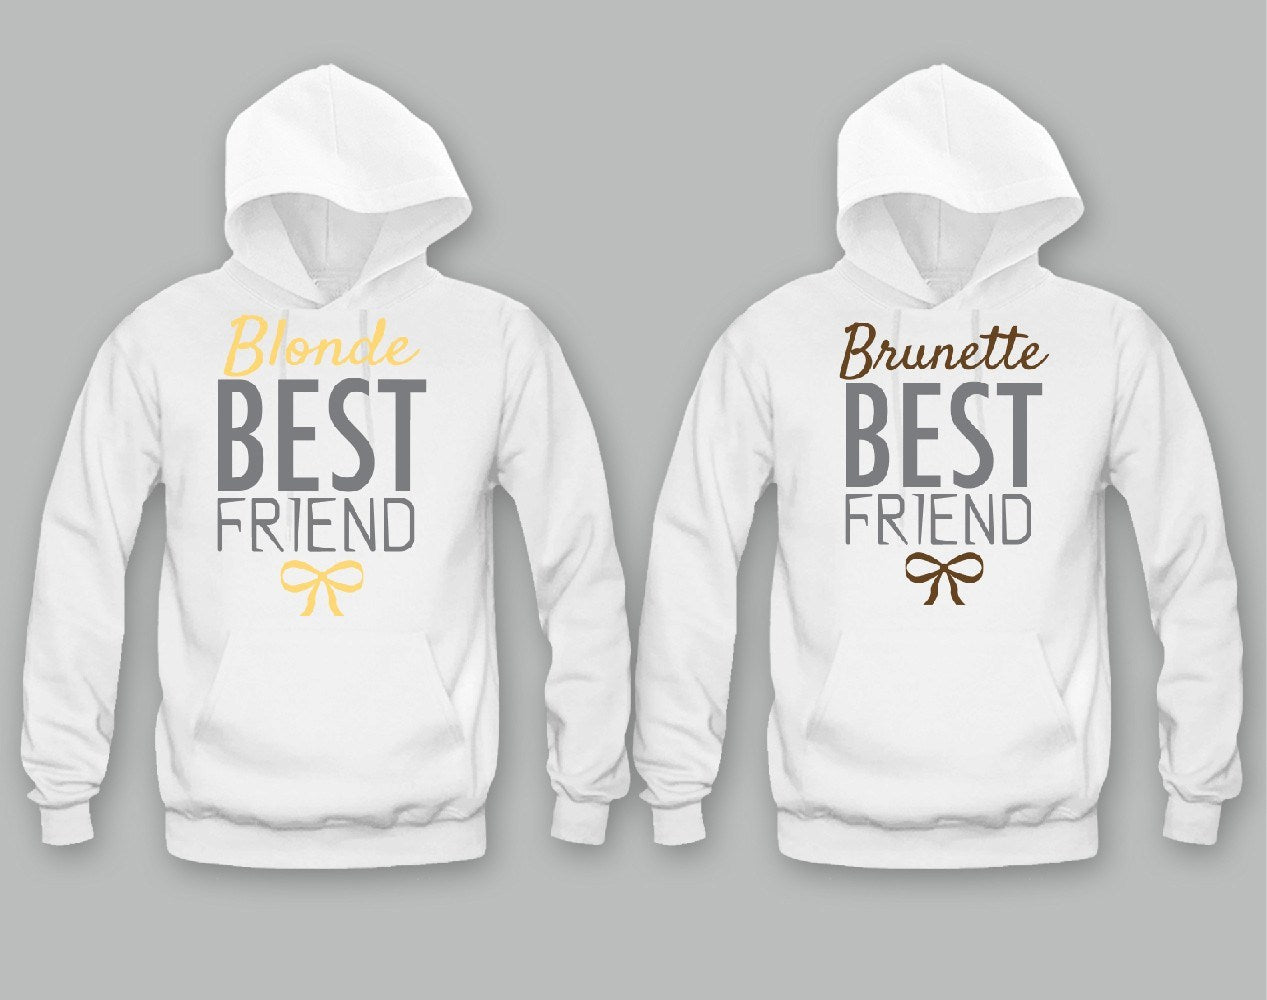 blonde best friend and brunette best friend sweatshirts